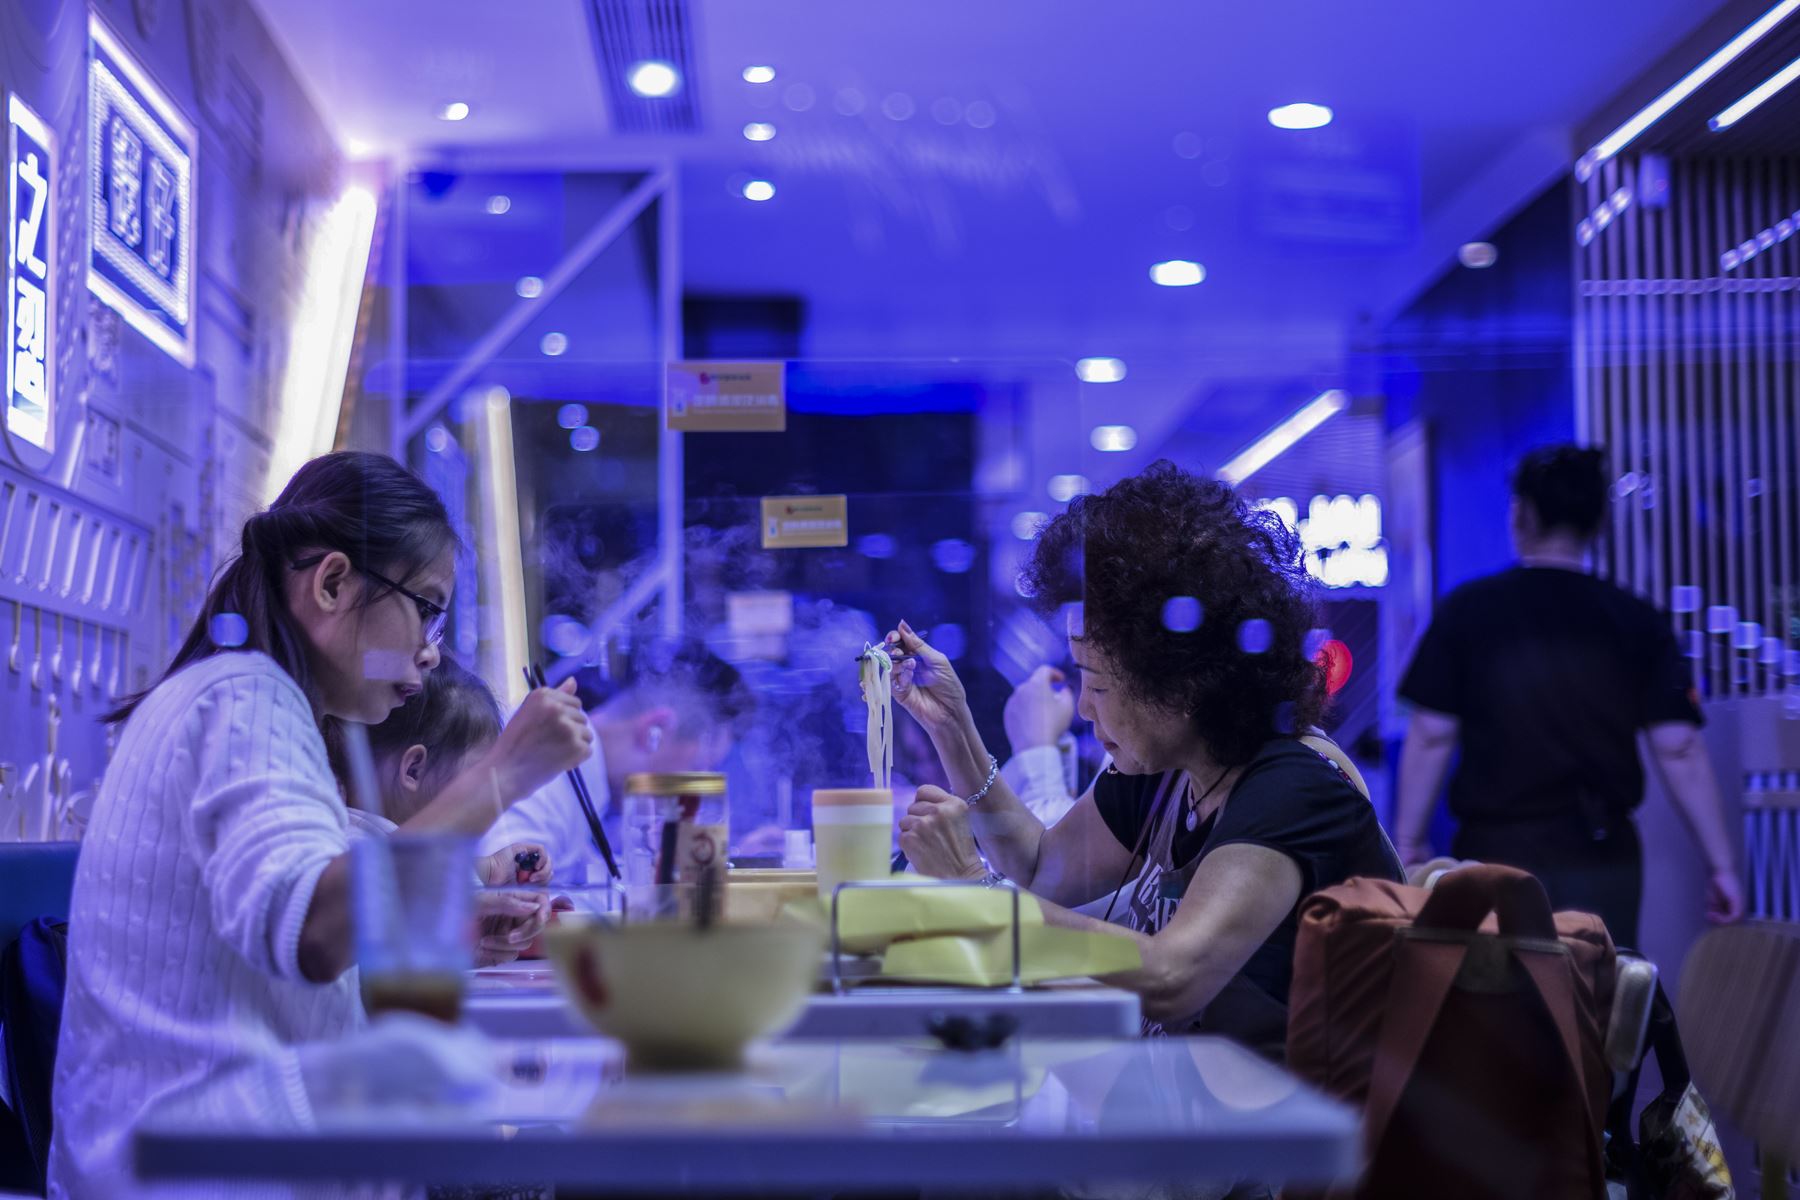 La gente come en un restaurante que implementó escudos de protección entre las mesas para mantener la distancia social y disminuir así los contagios Covid-19, en Hong Kong. Foto: AFP